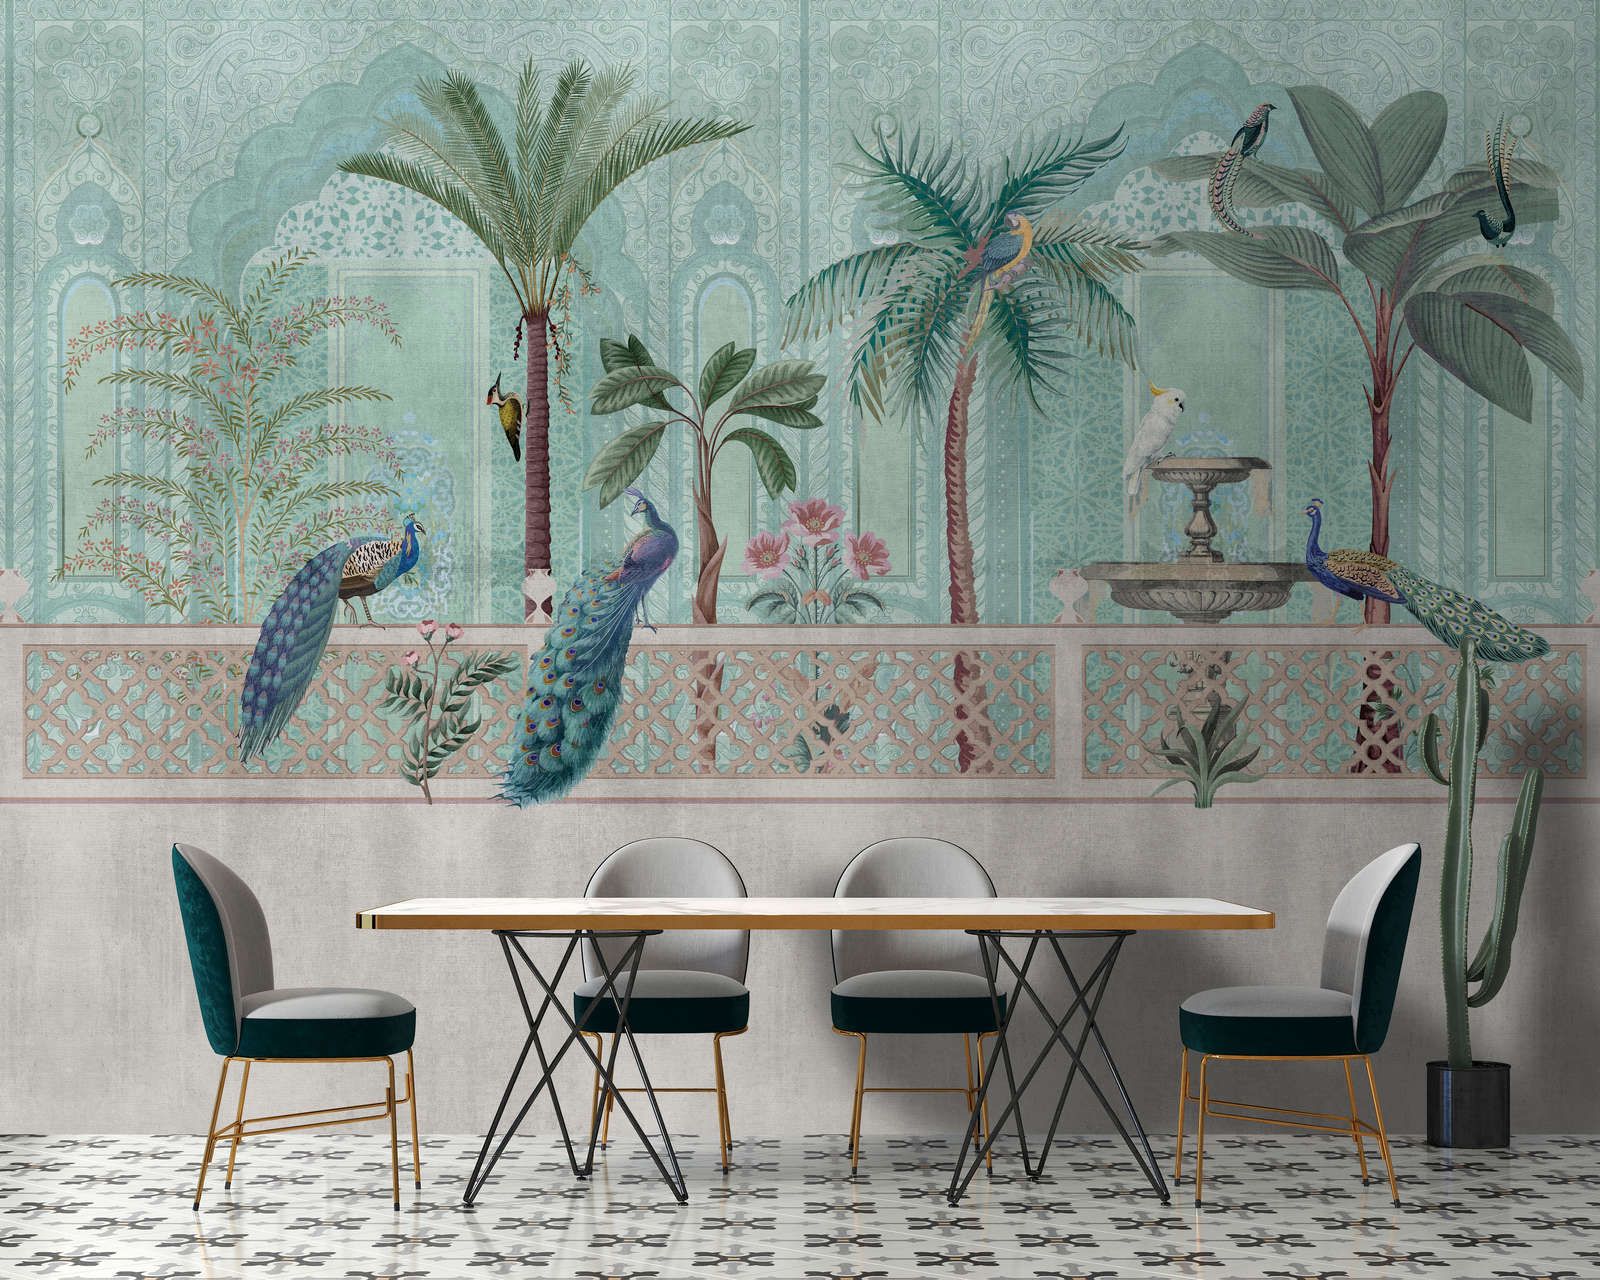             papier peint en papier »pavo« - oiseaux, palmiers & fontaines - vert, bleu avec structure gobelin | intissé légèrement structuré
        